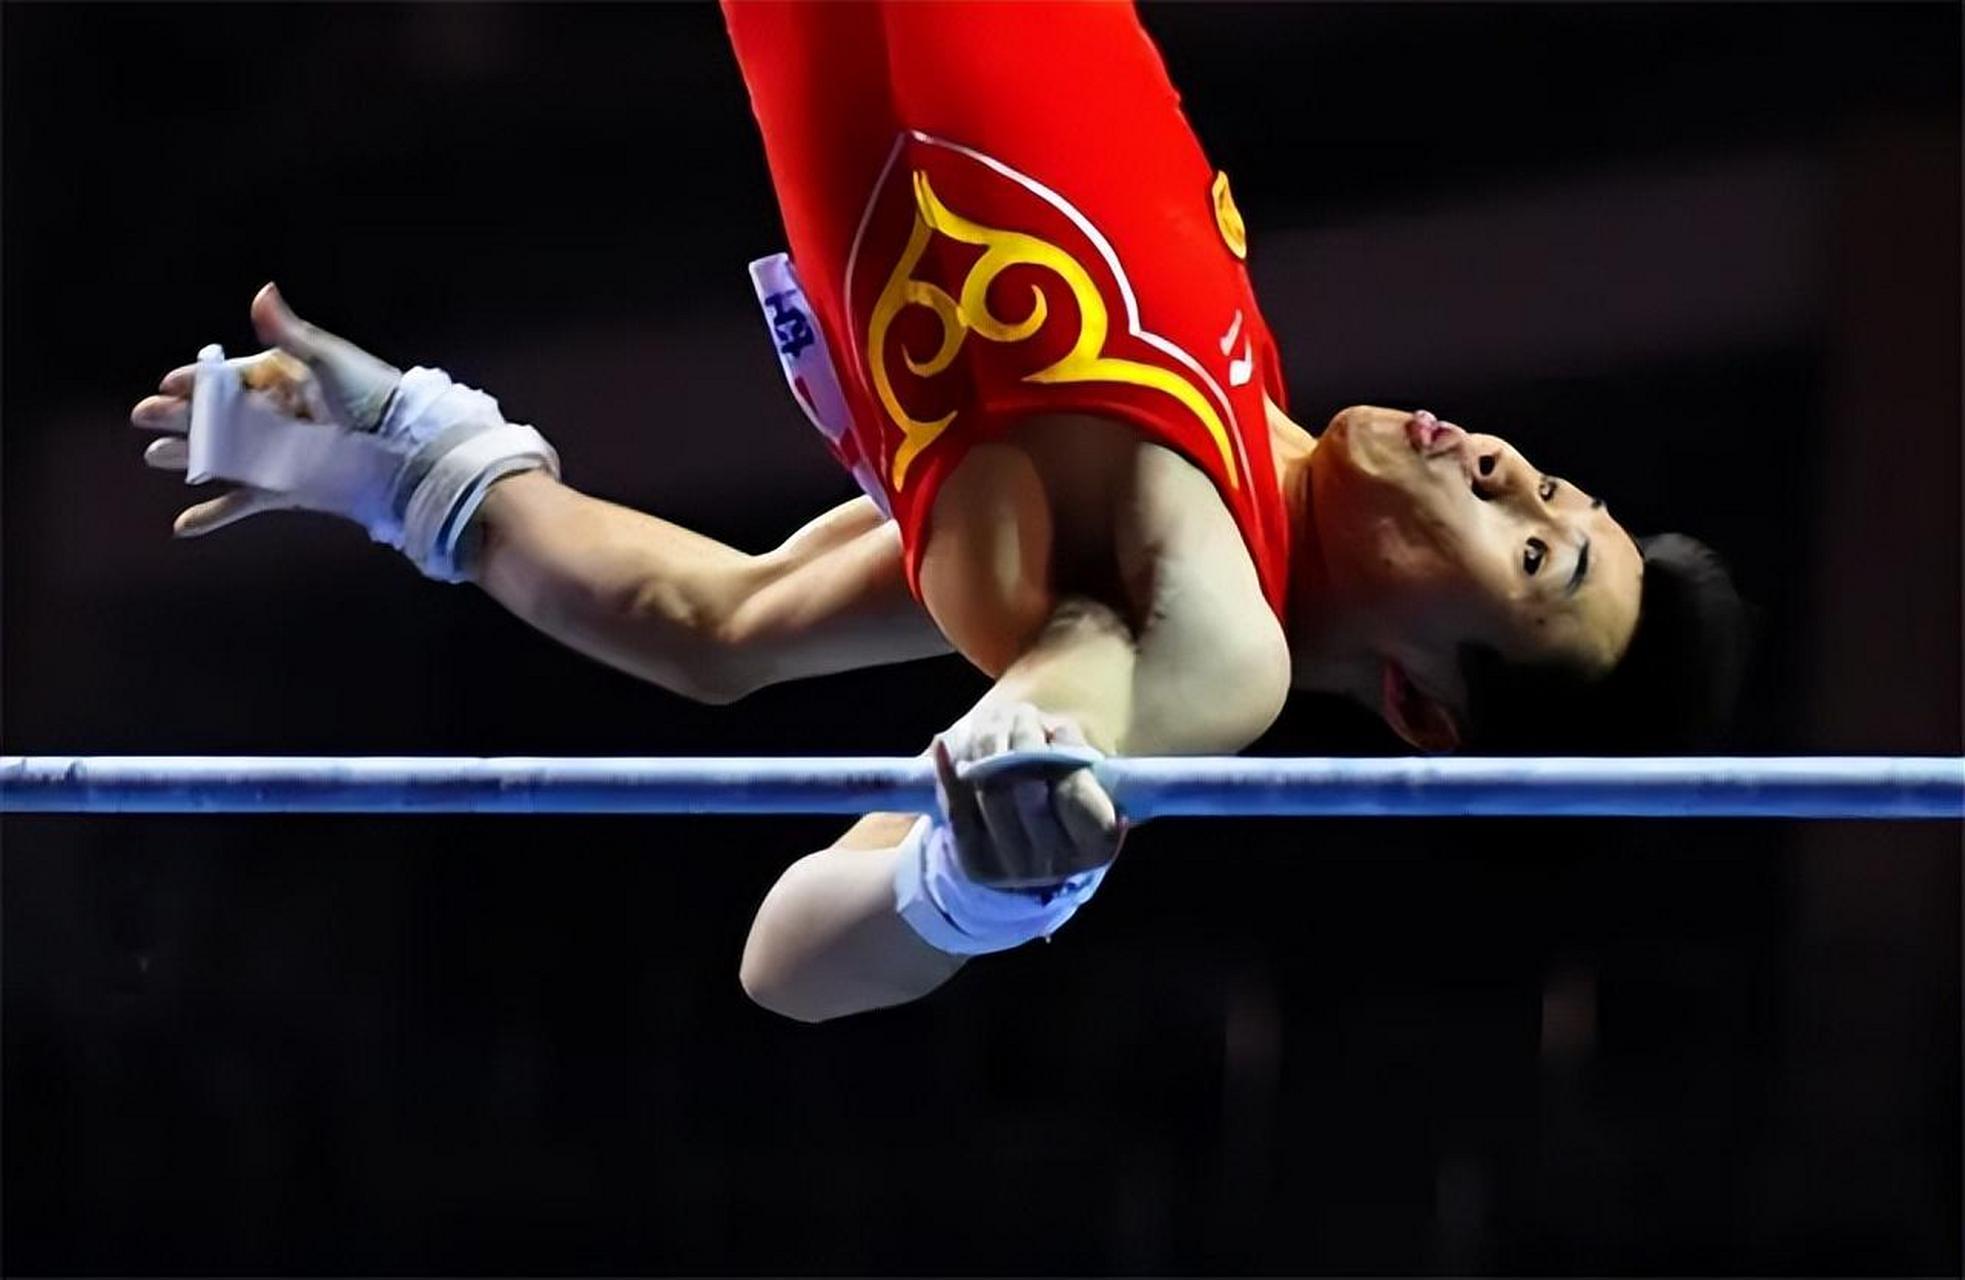 奥运会顶级体育赛事,每四年一次,中国跳水队与体操队是传统强项